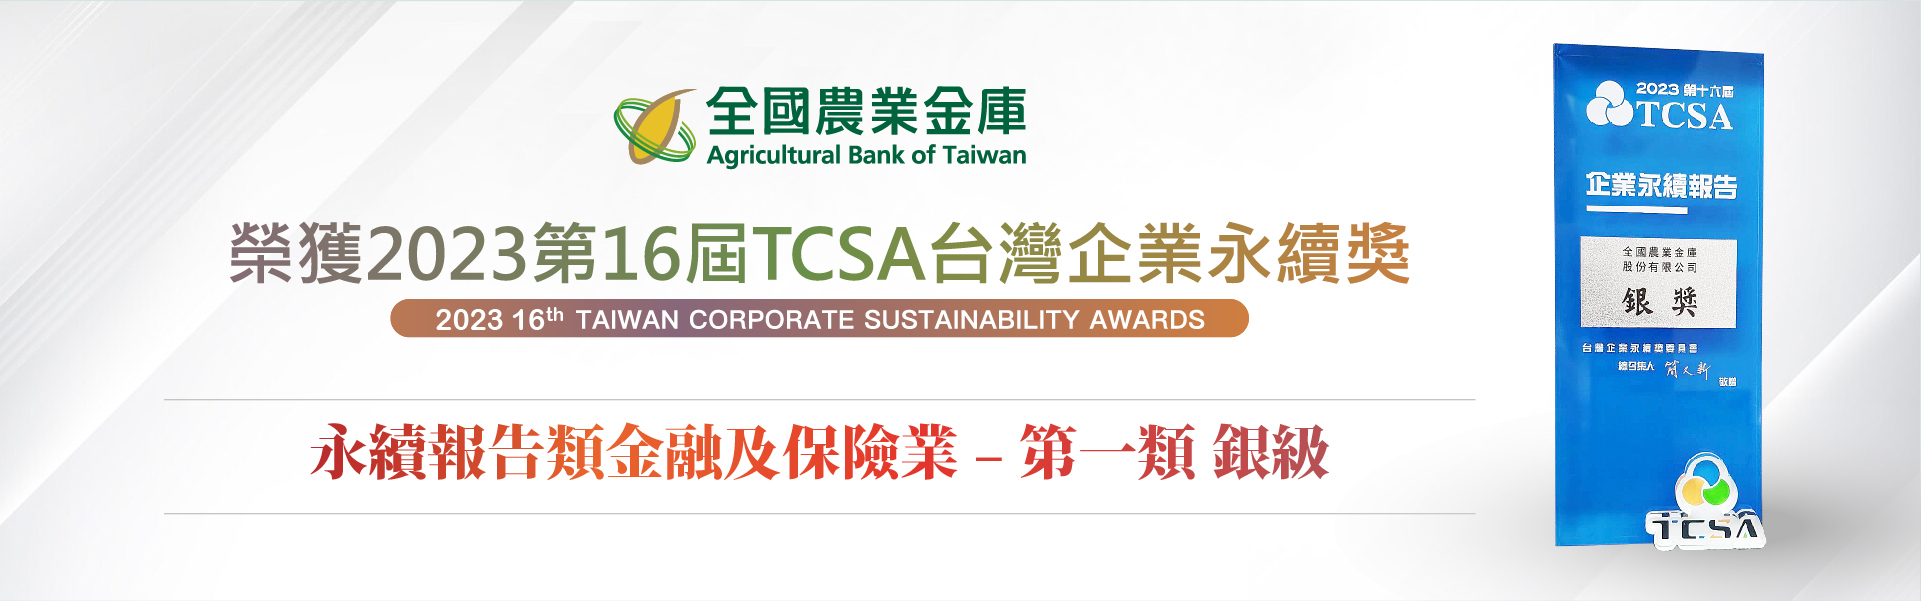 2023第16屆TCSA台灣企業永續獎-永續報告類-銀級